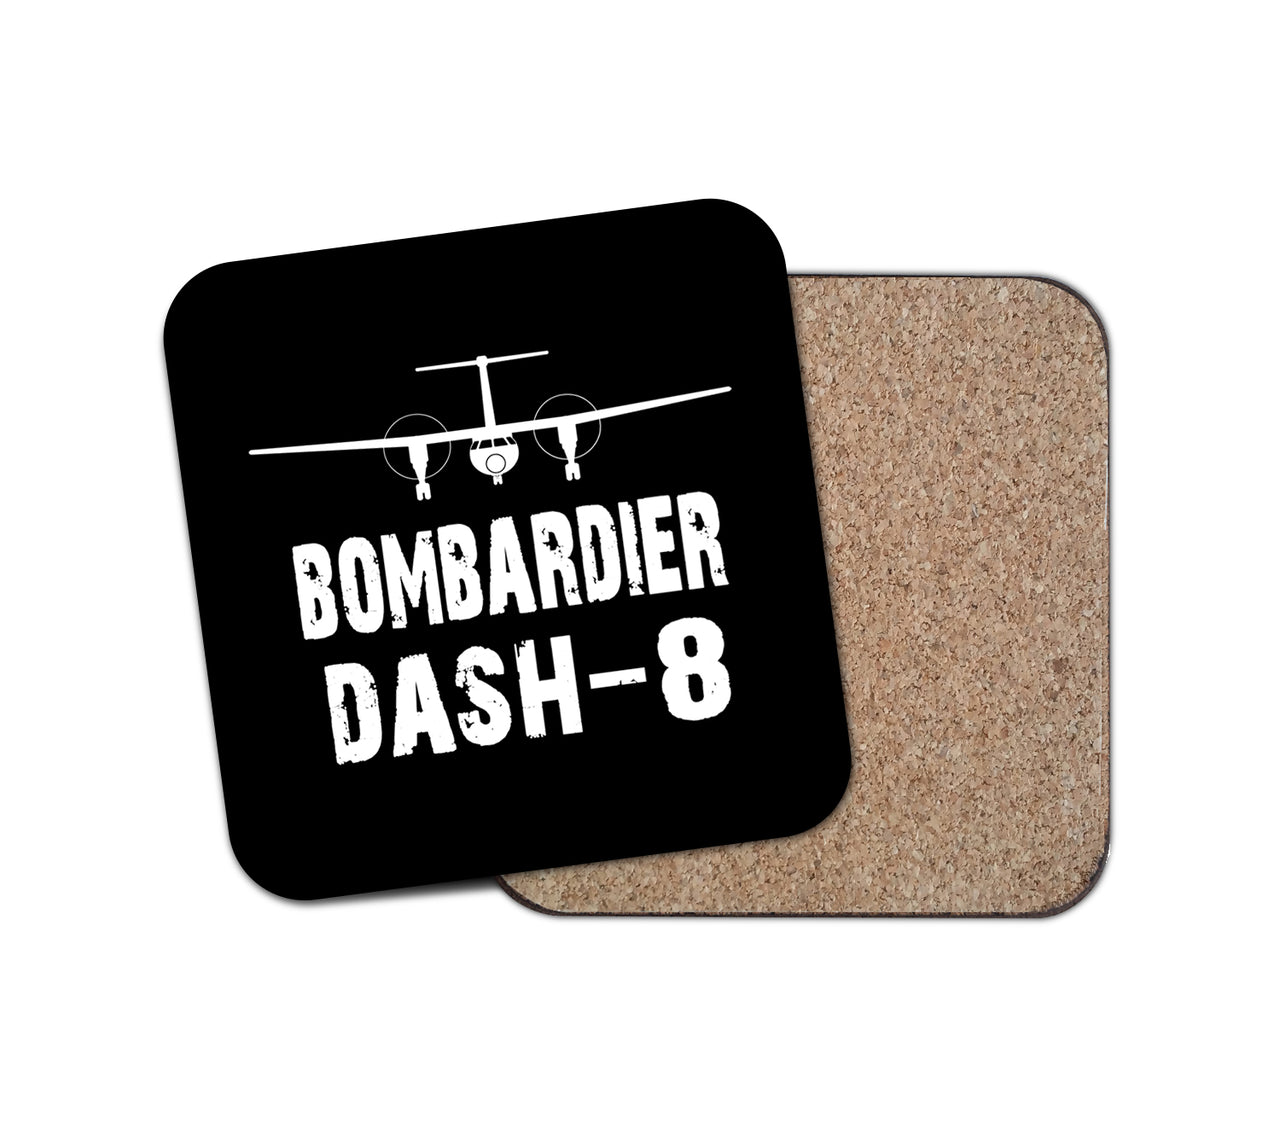 Bombardier Dash-8 & Plane Designed Coasters